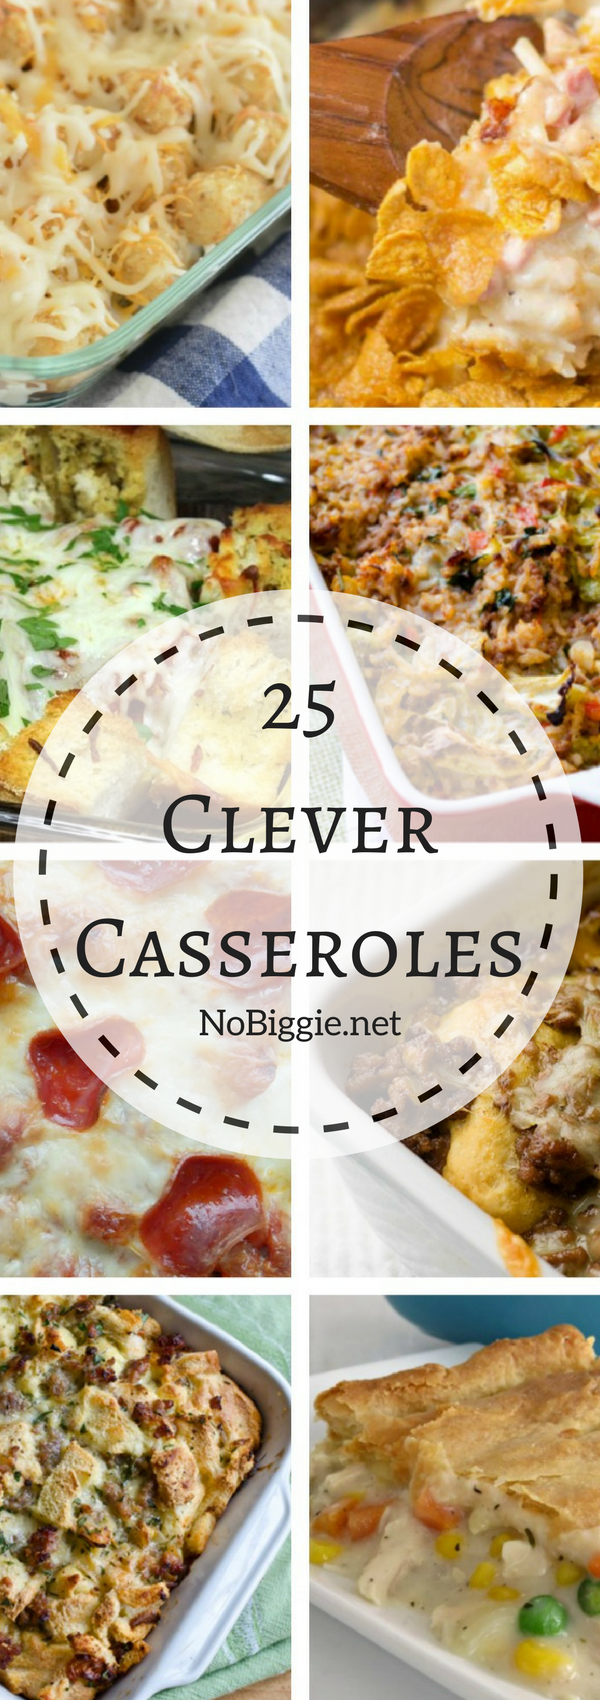 25+ clever casseroles | NoBiggie.net